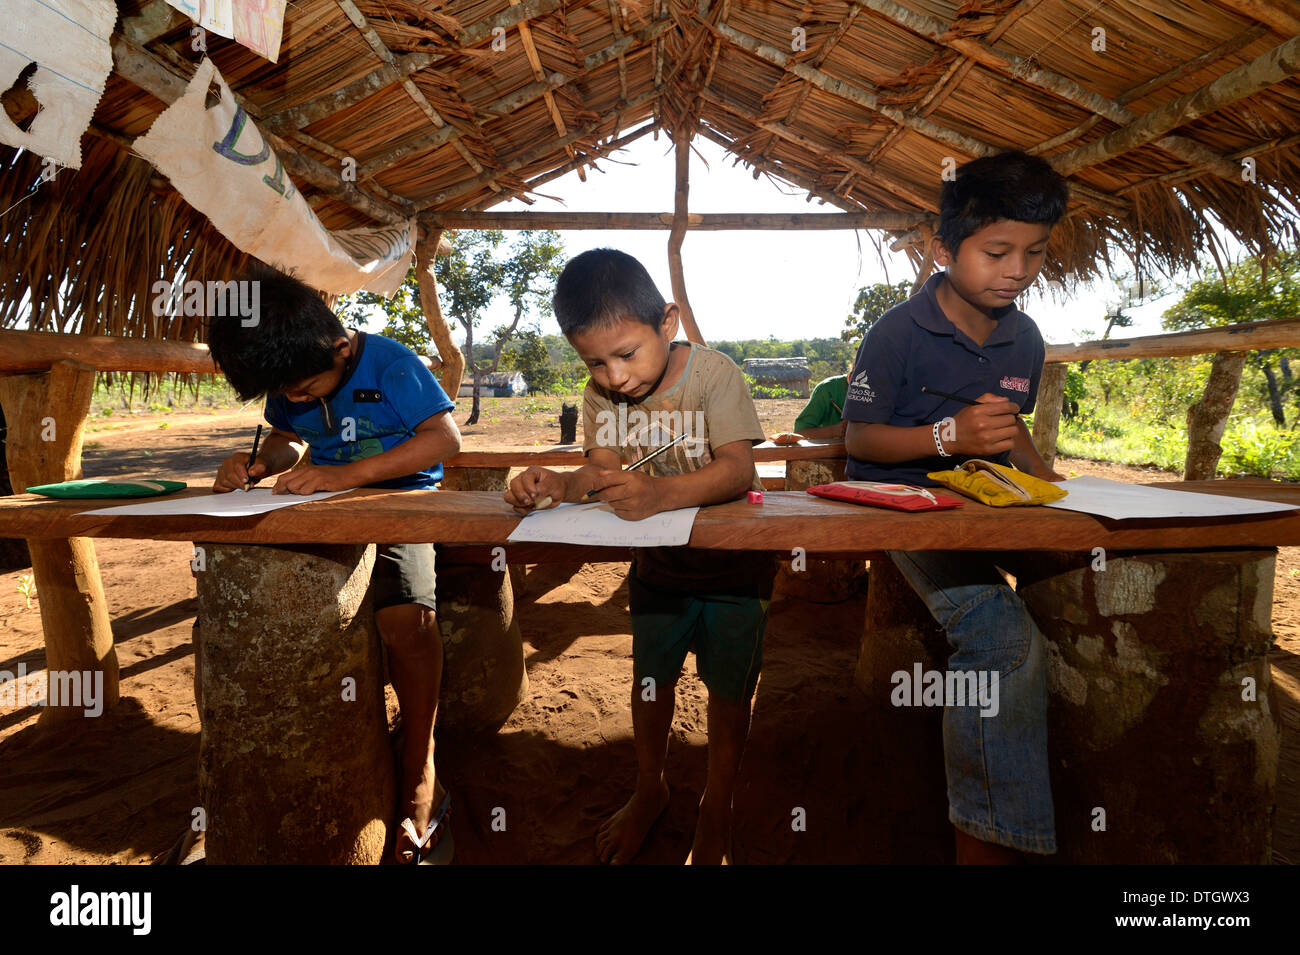 Schule in einem Dorf der Xavantes Menschen, Tres Rios in der Nähe von der Mission der Sangradouro, Primavera Leste, Mato Grosso, Brasilien Stockfoto